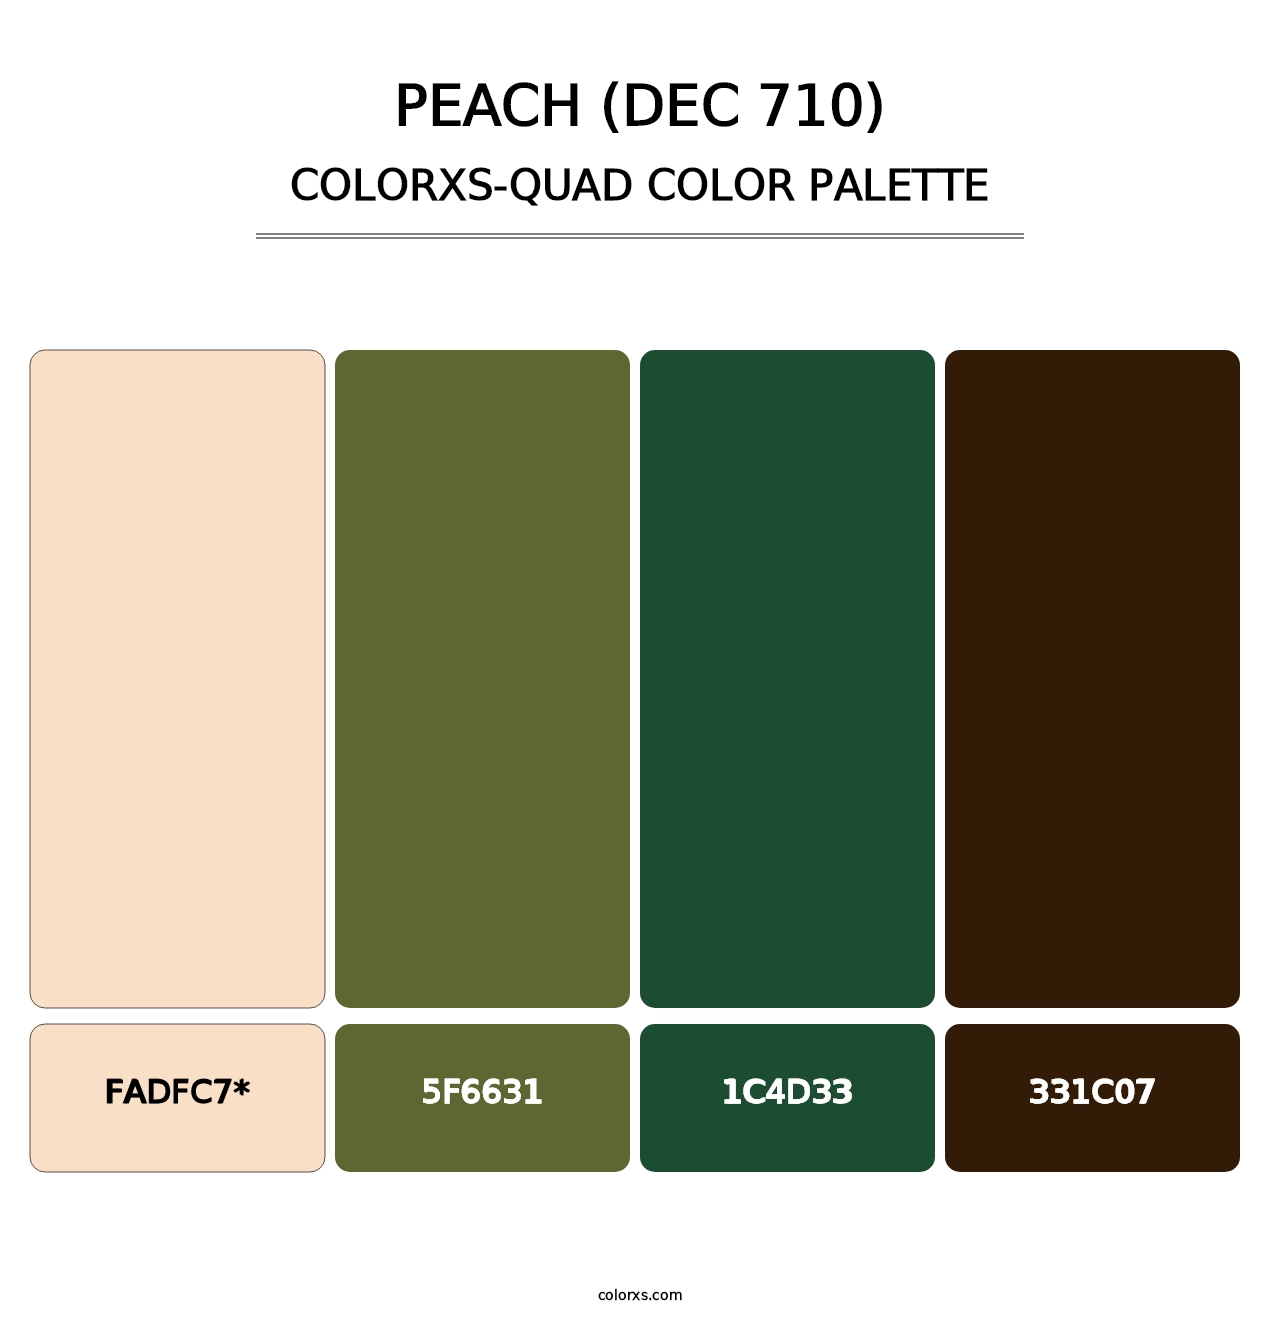 Peach (DEC 710) - Colorxs Quad Palette